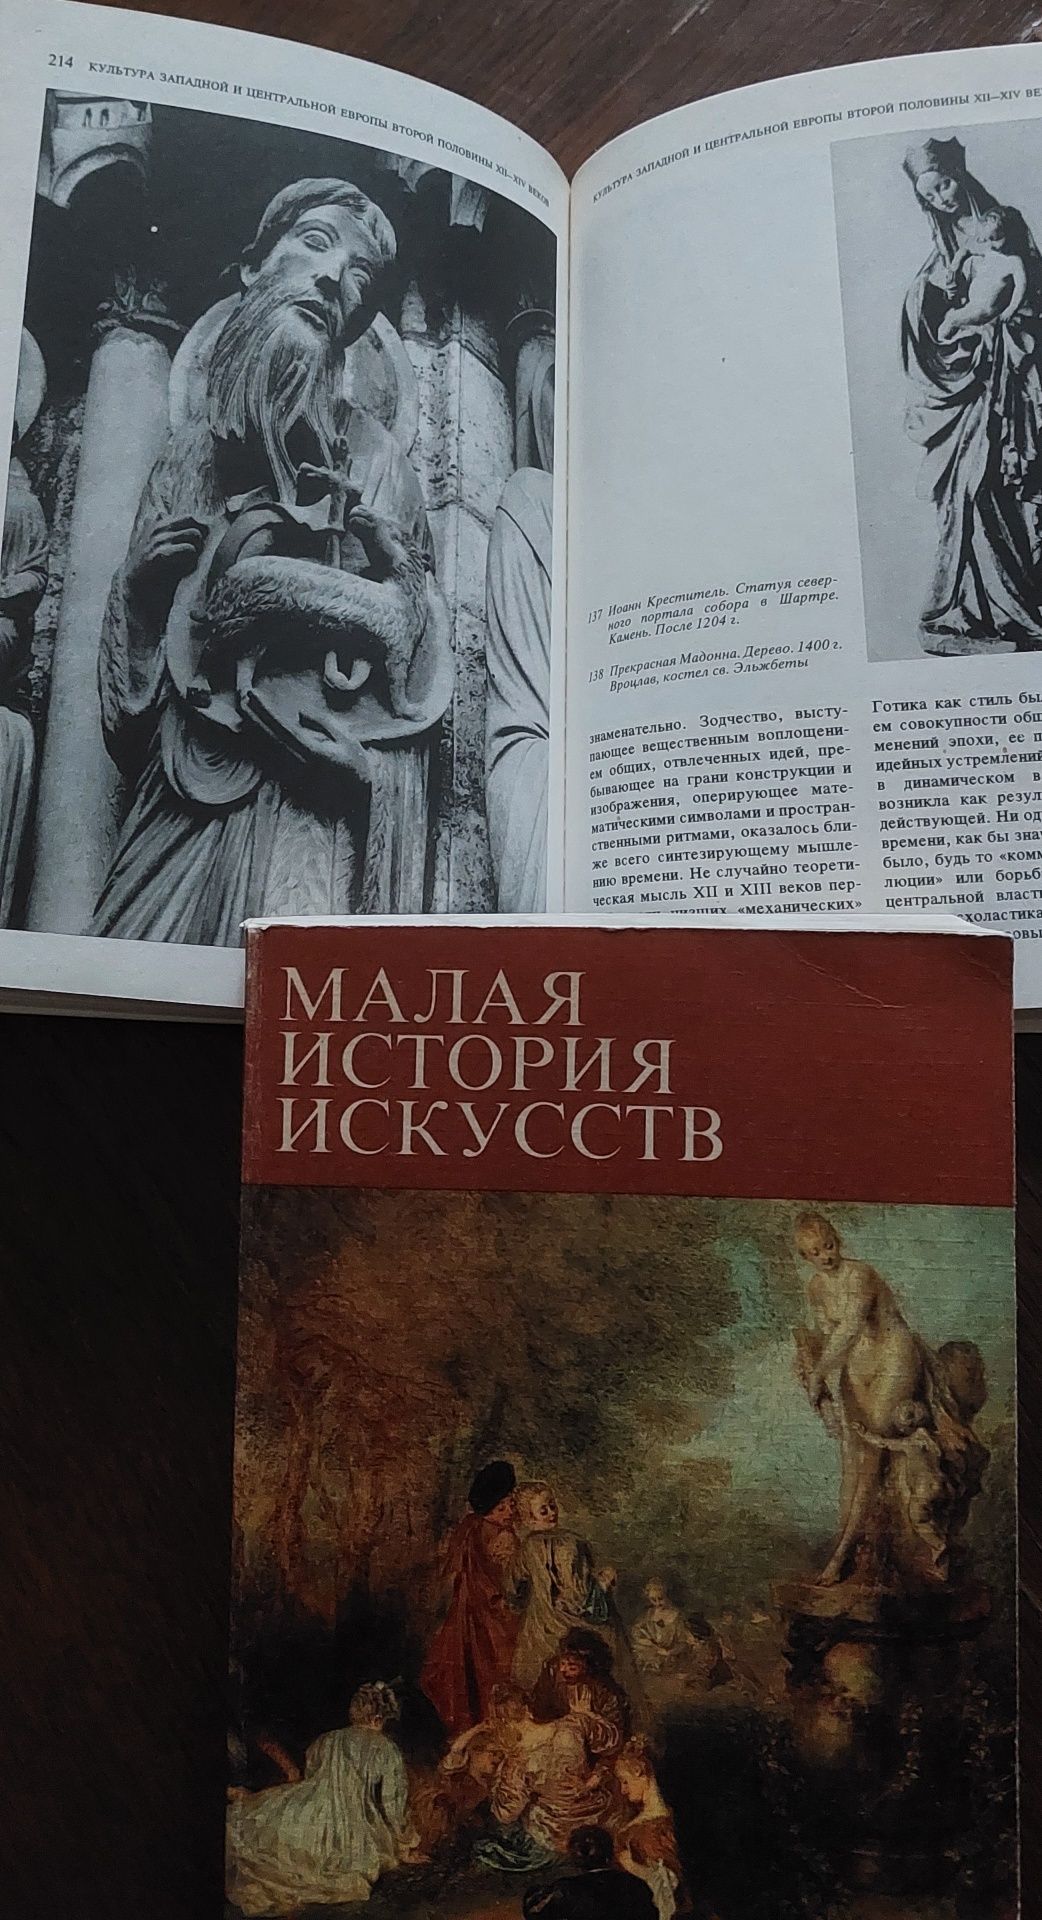 "Малая история искусств " Кантор А.М. 2 книги